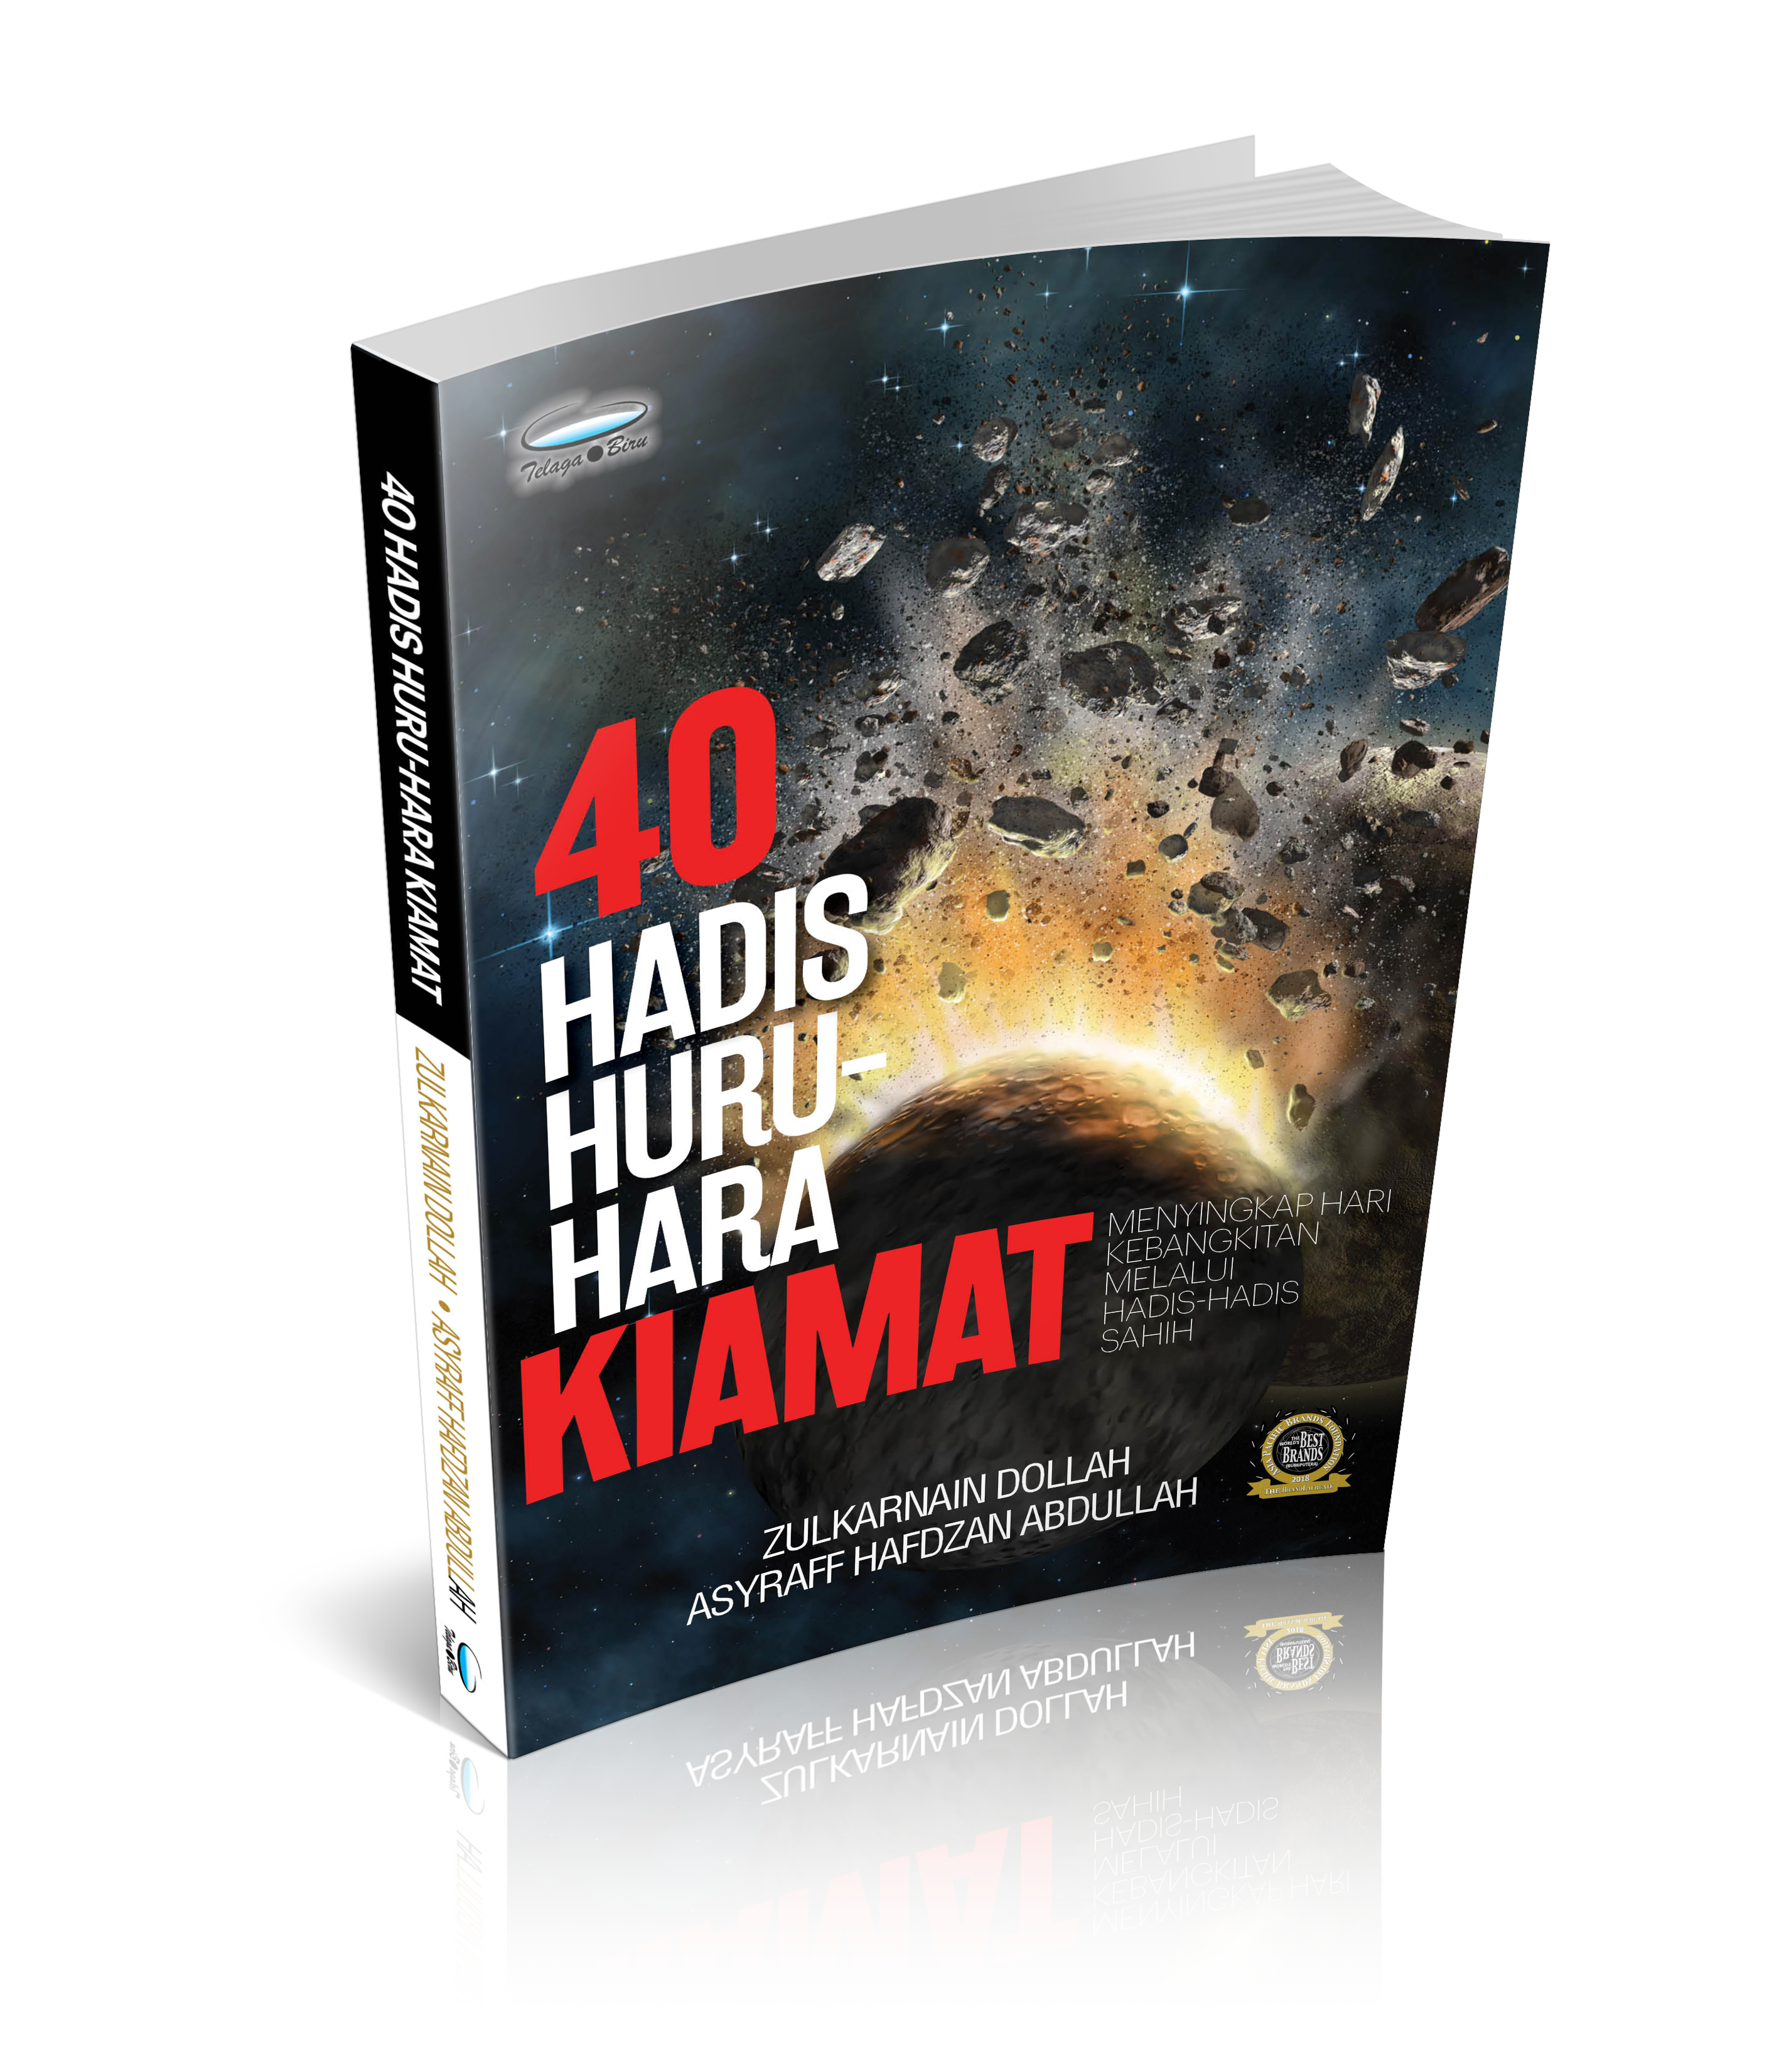 40 HADIS HURU-HARA KIAMAT - (TBBK1480)